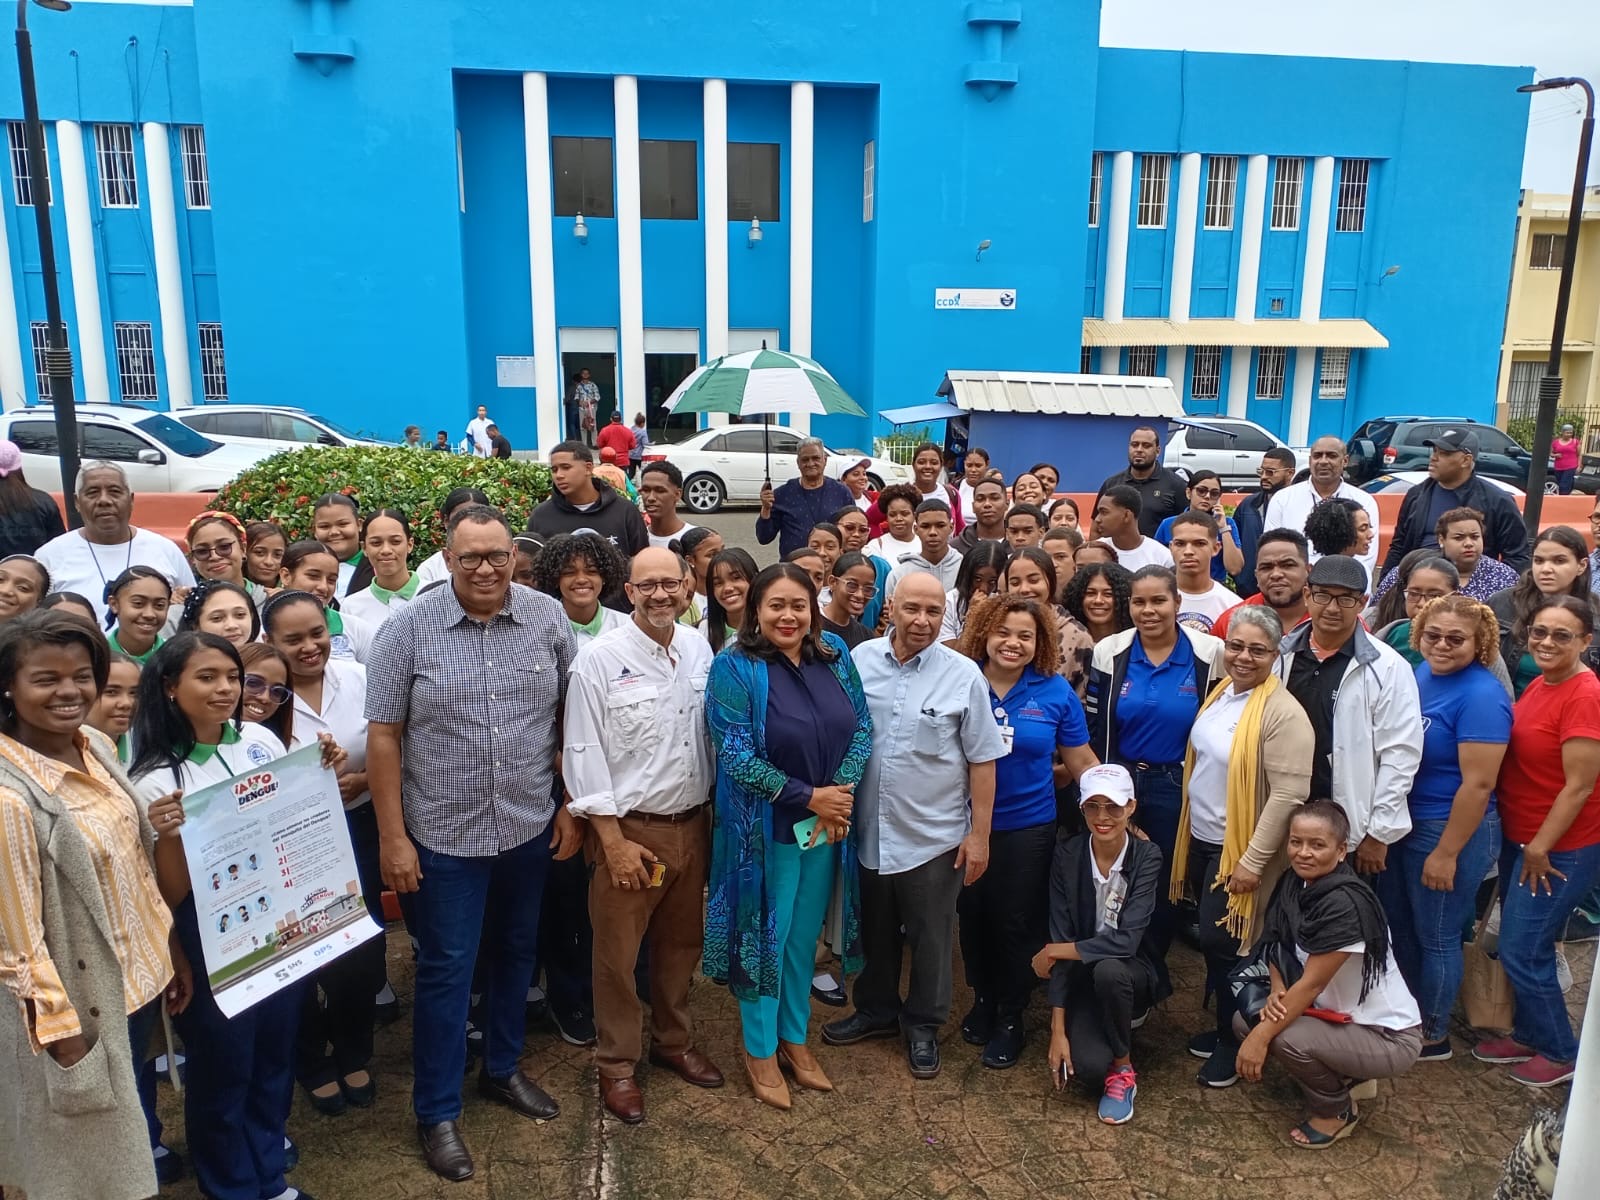  Salud Pública en Puerto Plata lanza jornada de movilización social y comunitaria contra el Dengue